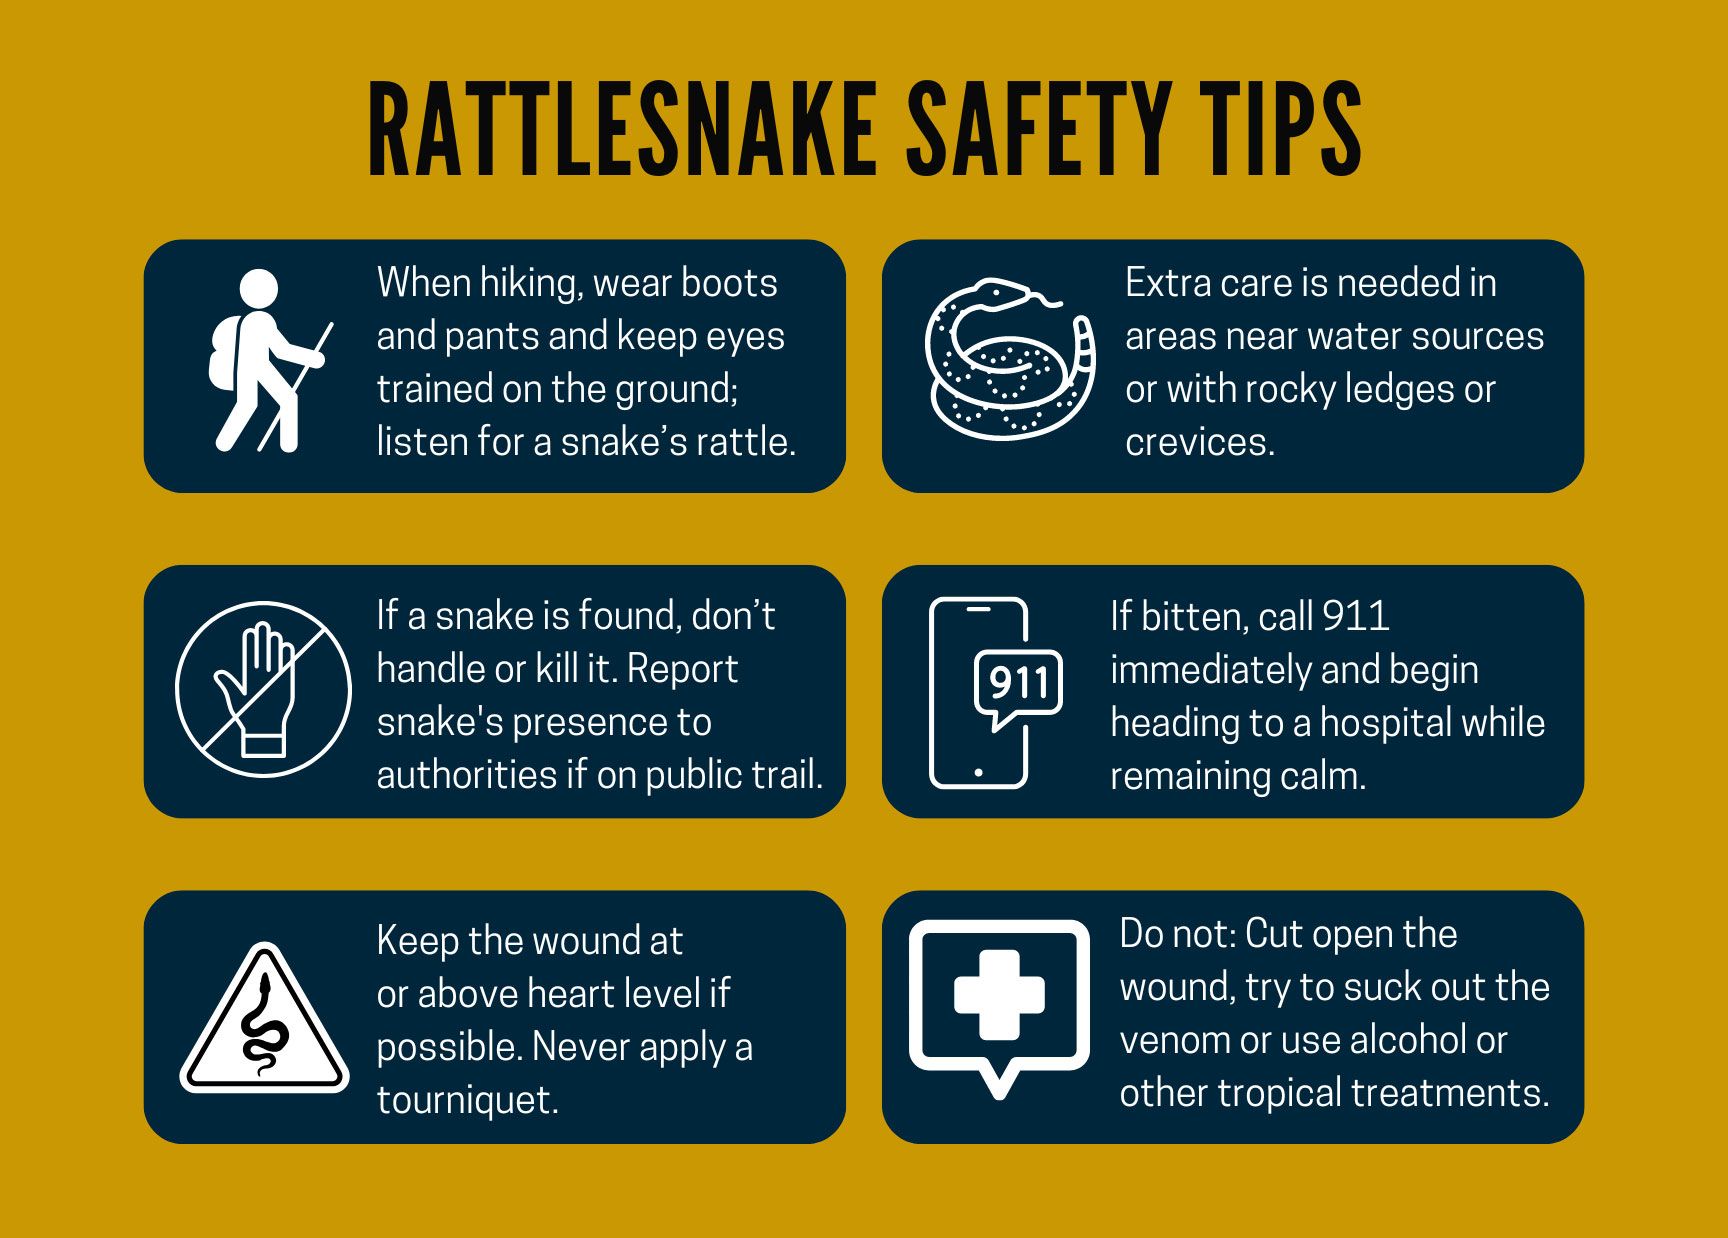 Rattlesnake tips